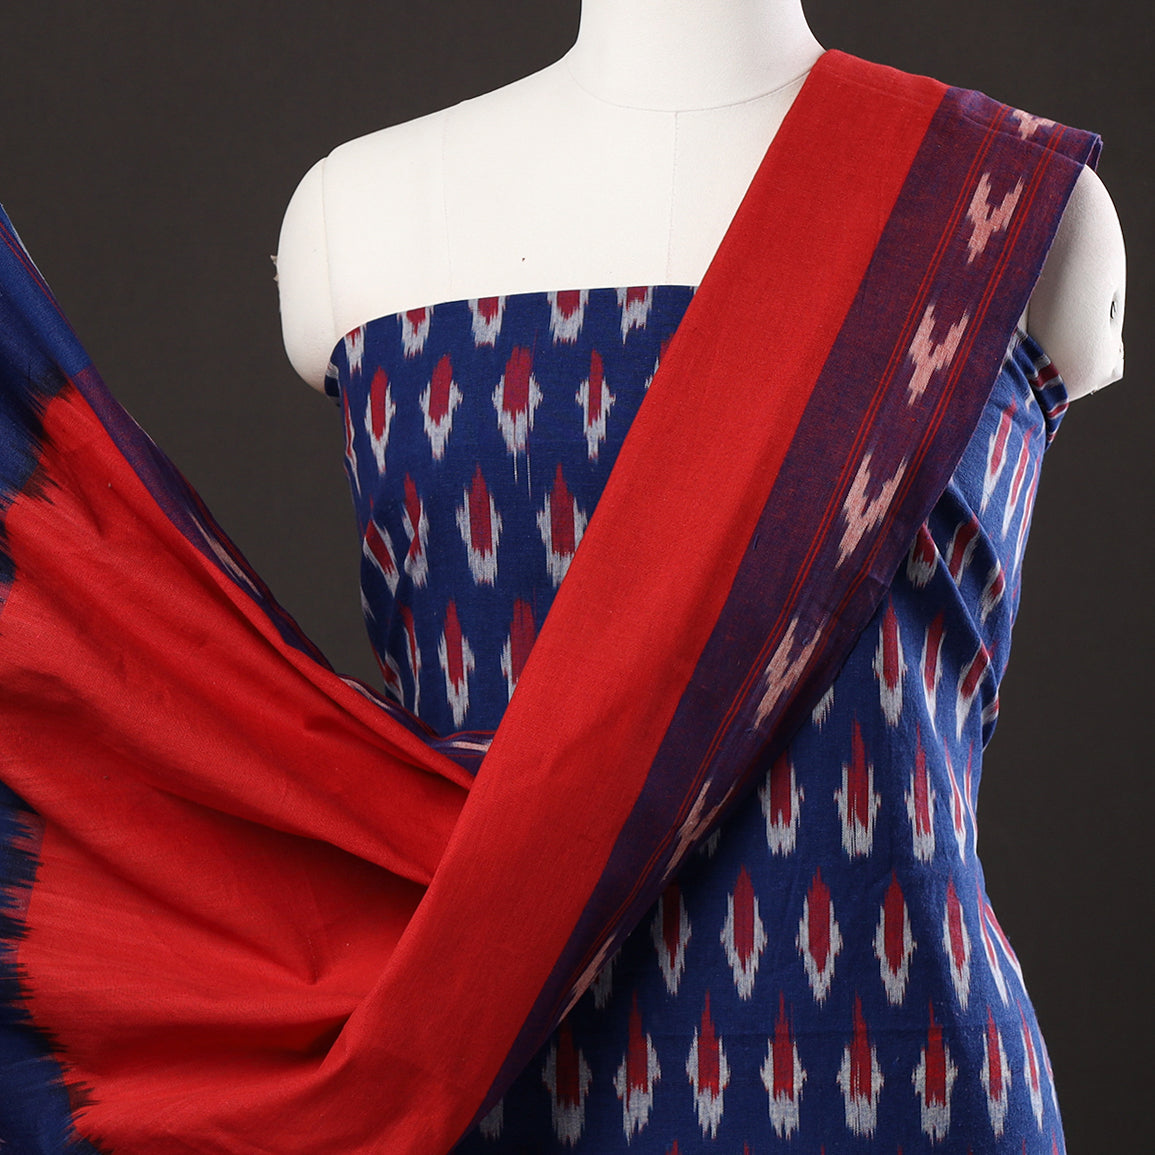 Blue - 3pc Pochampally Ikat Weave Handloom Cotton Suit Material Set 13